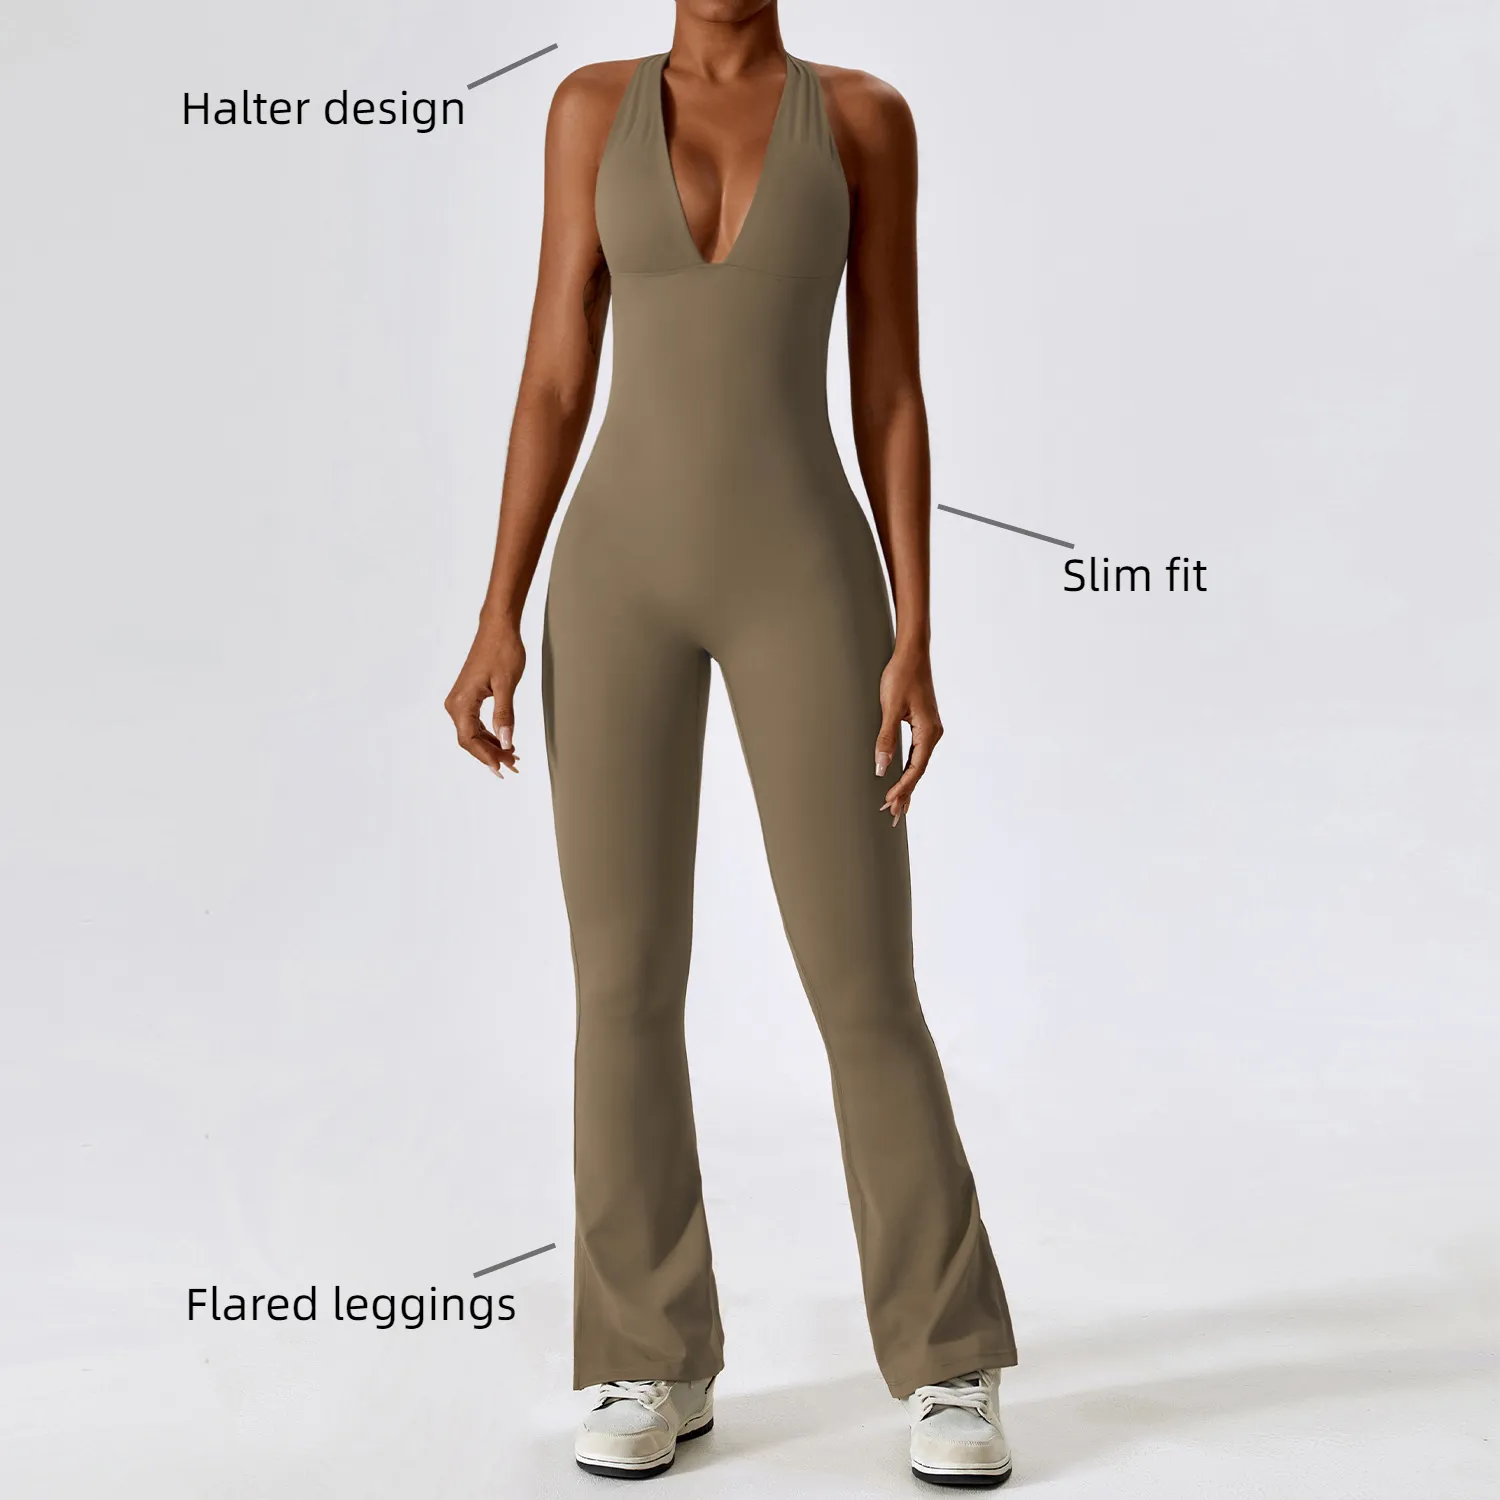 Ladies Skinny Plus Size Compression Leggings svasati tuta allenamento compressione donna Fitness Wear Yoga tuta